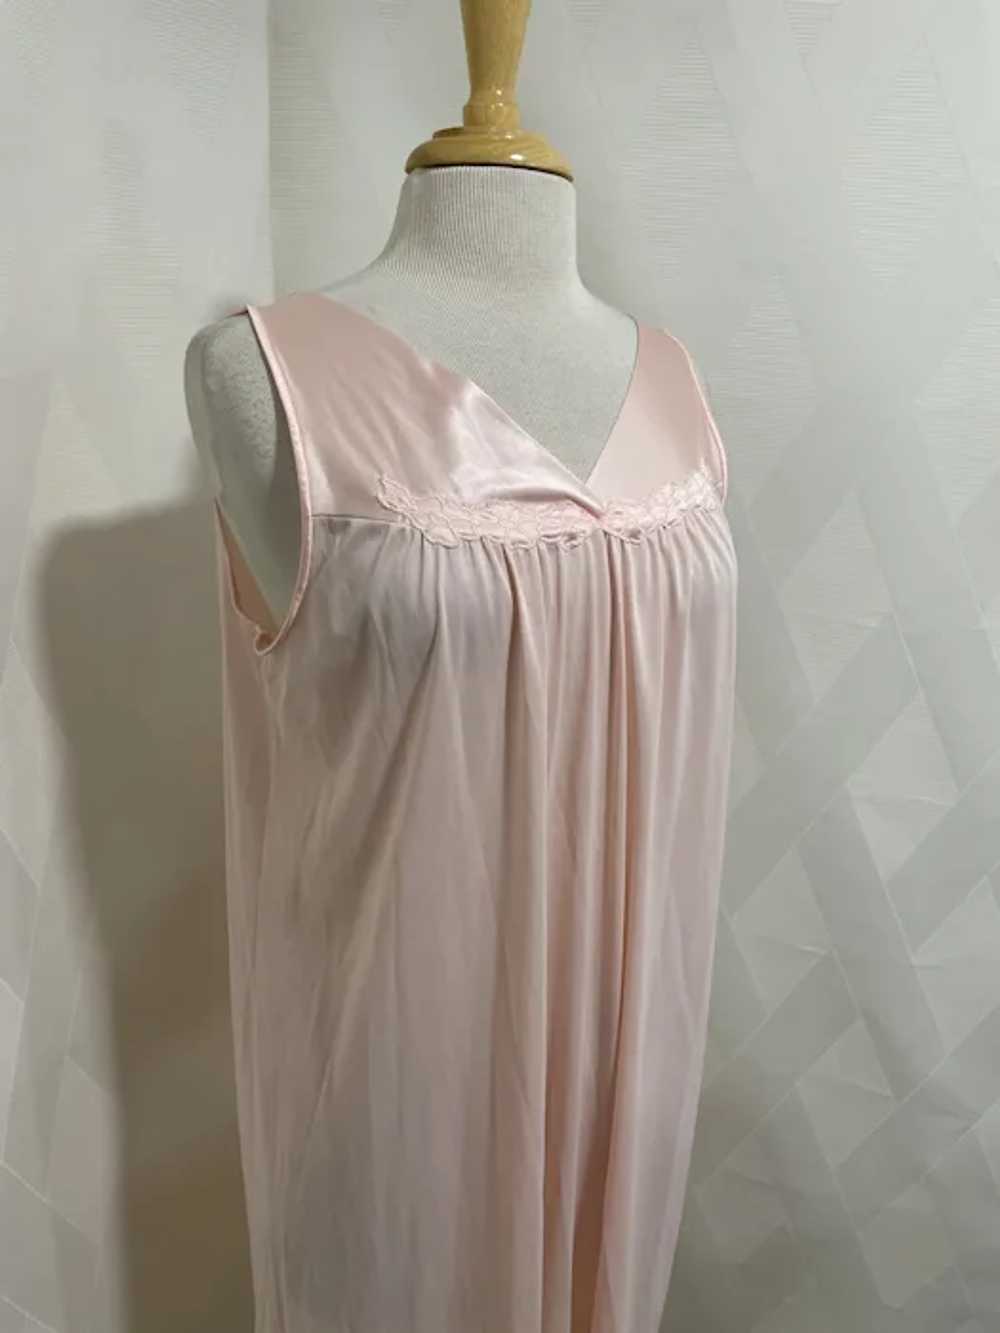 Vintage 1980s Vanity Fair Nightgown - image 2